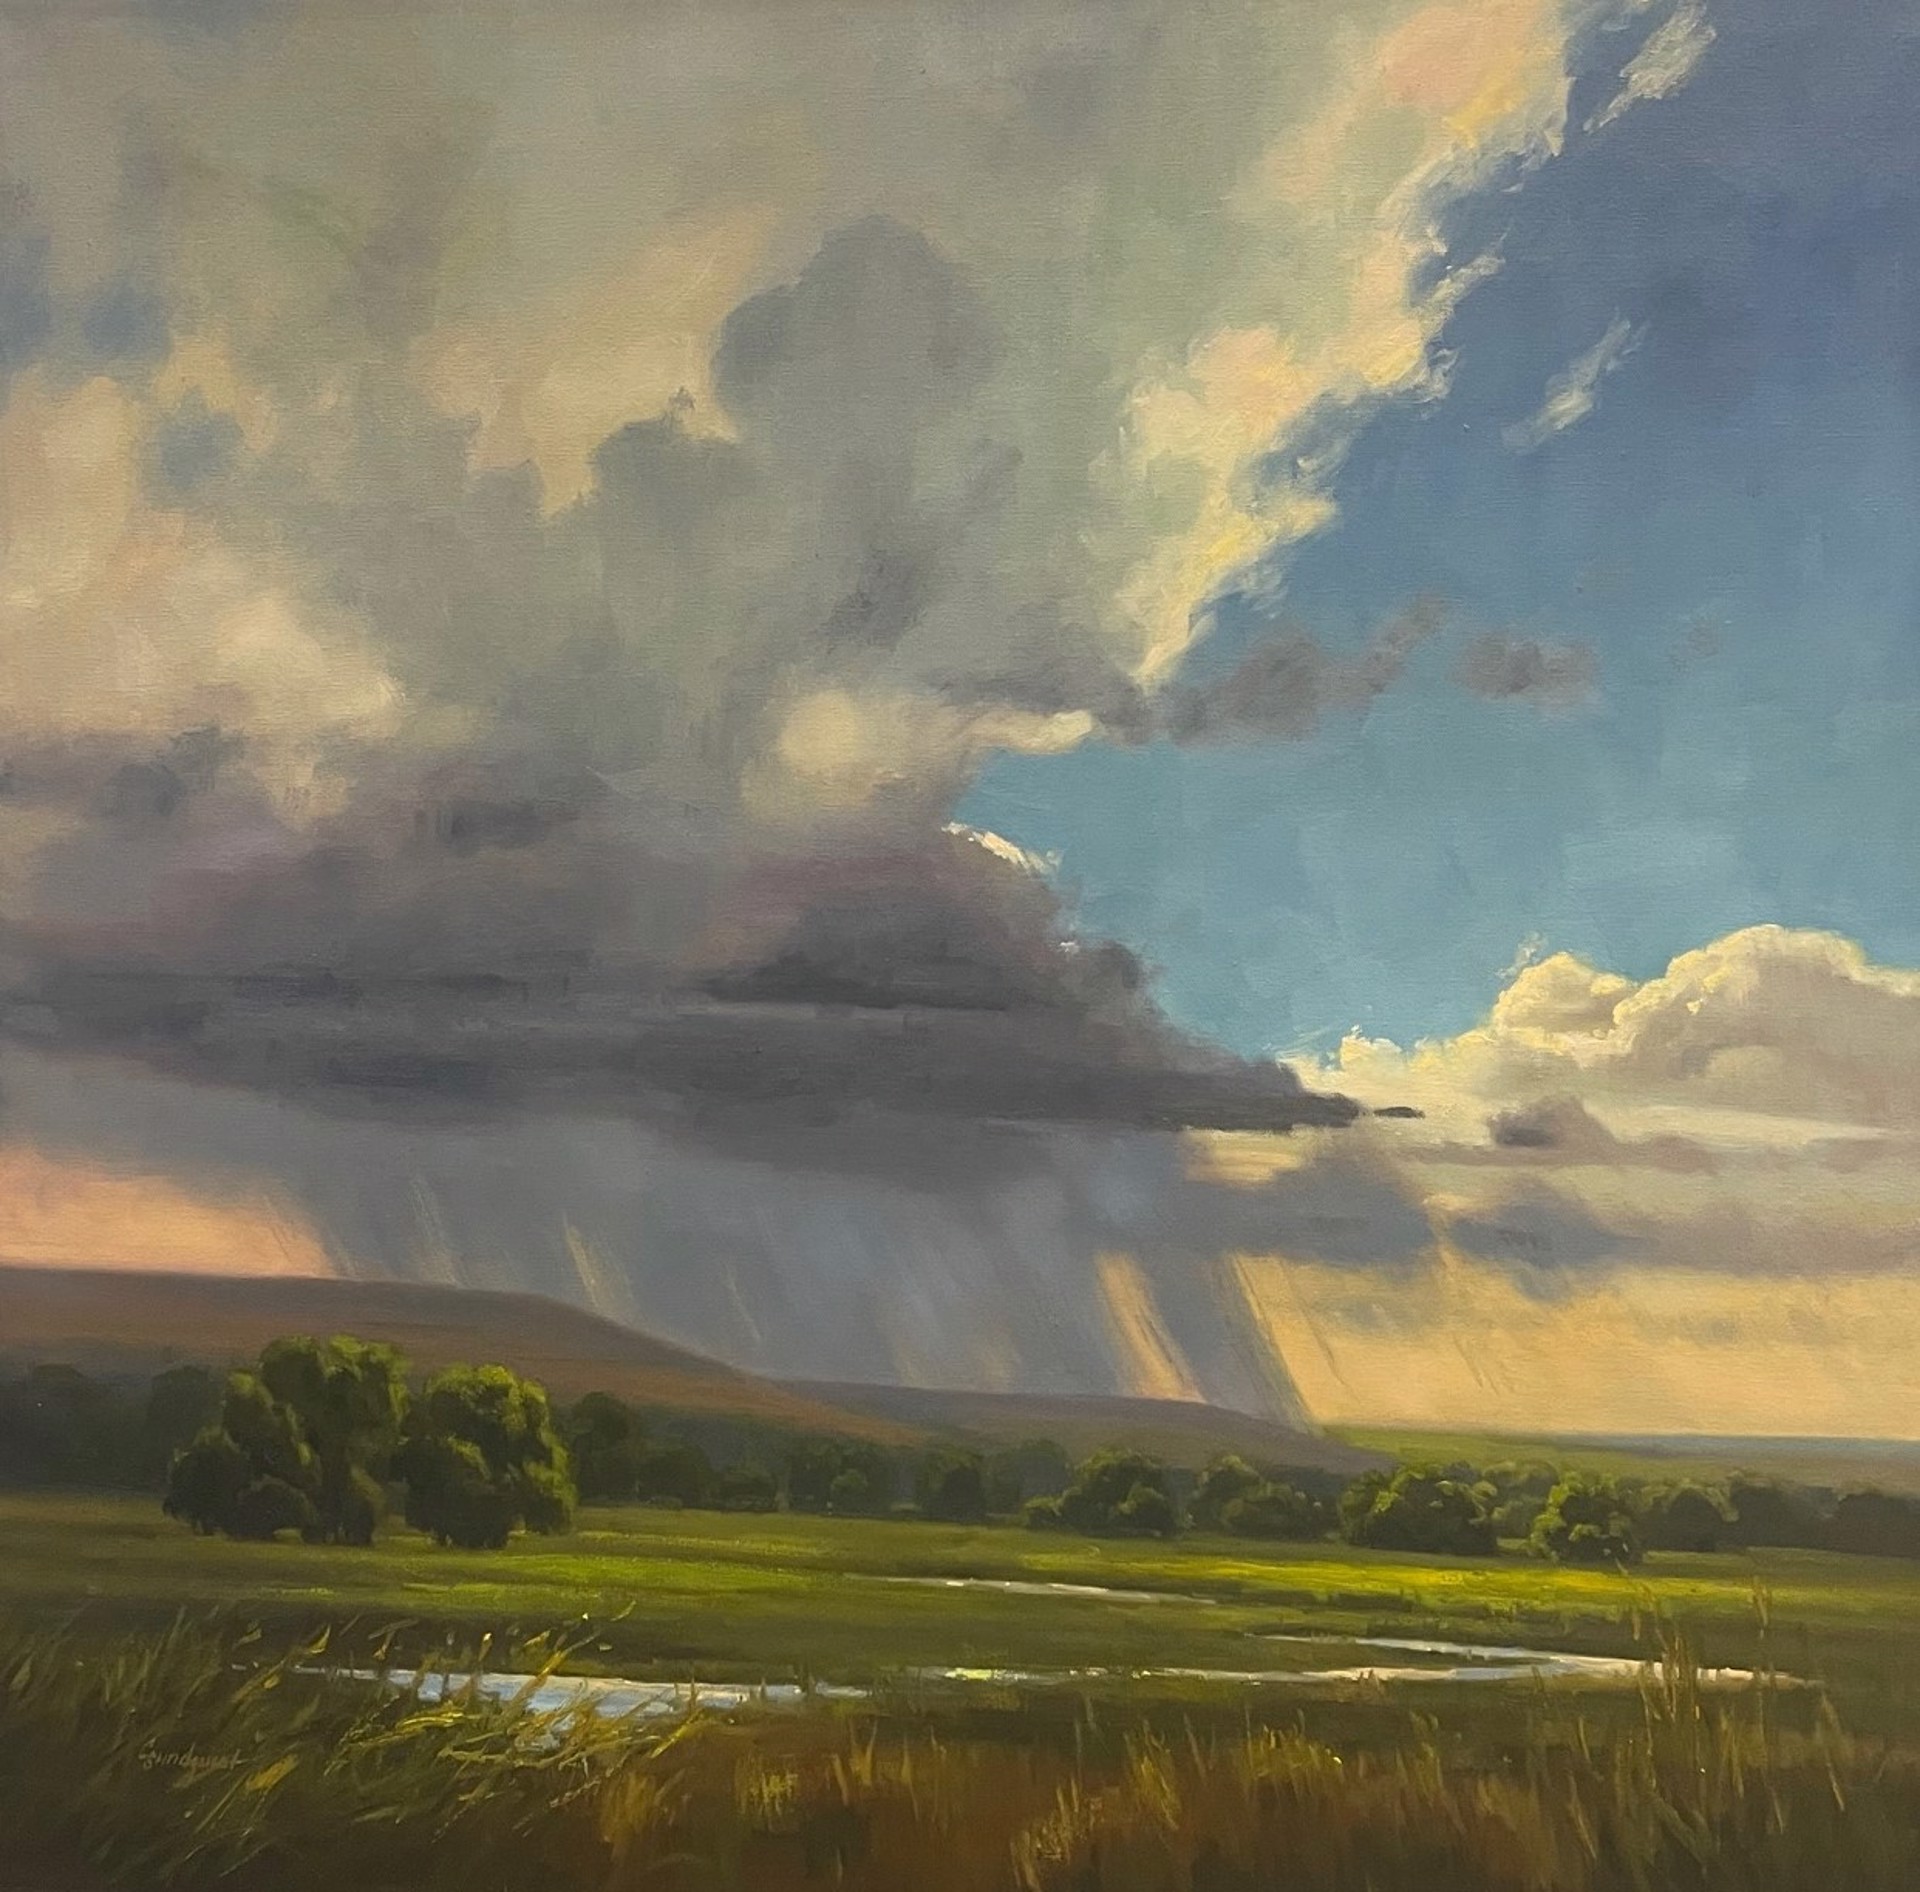 Kansas Shower & Light by Cristine Sundquist